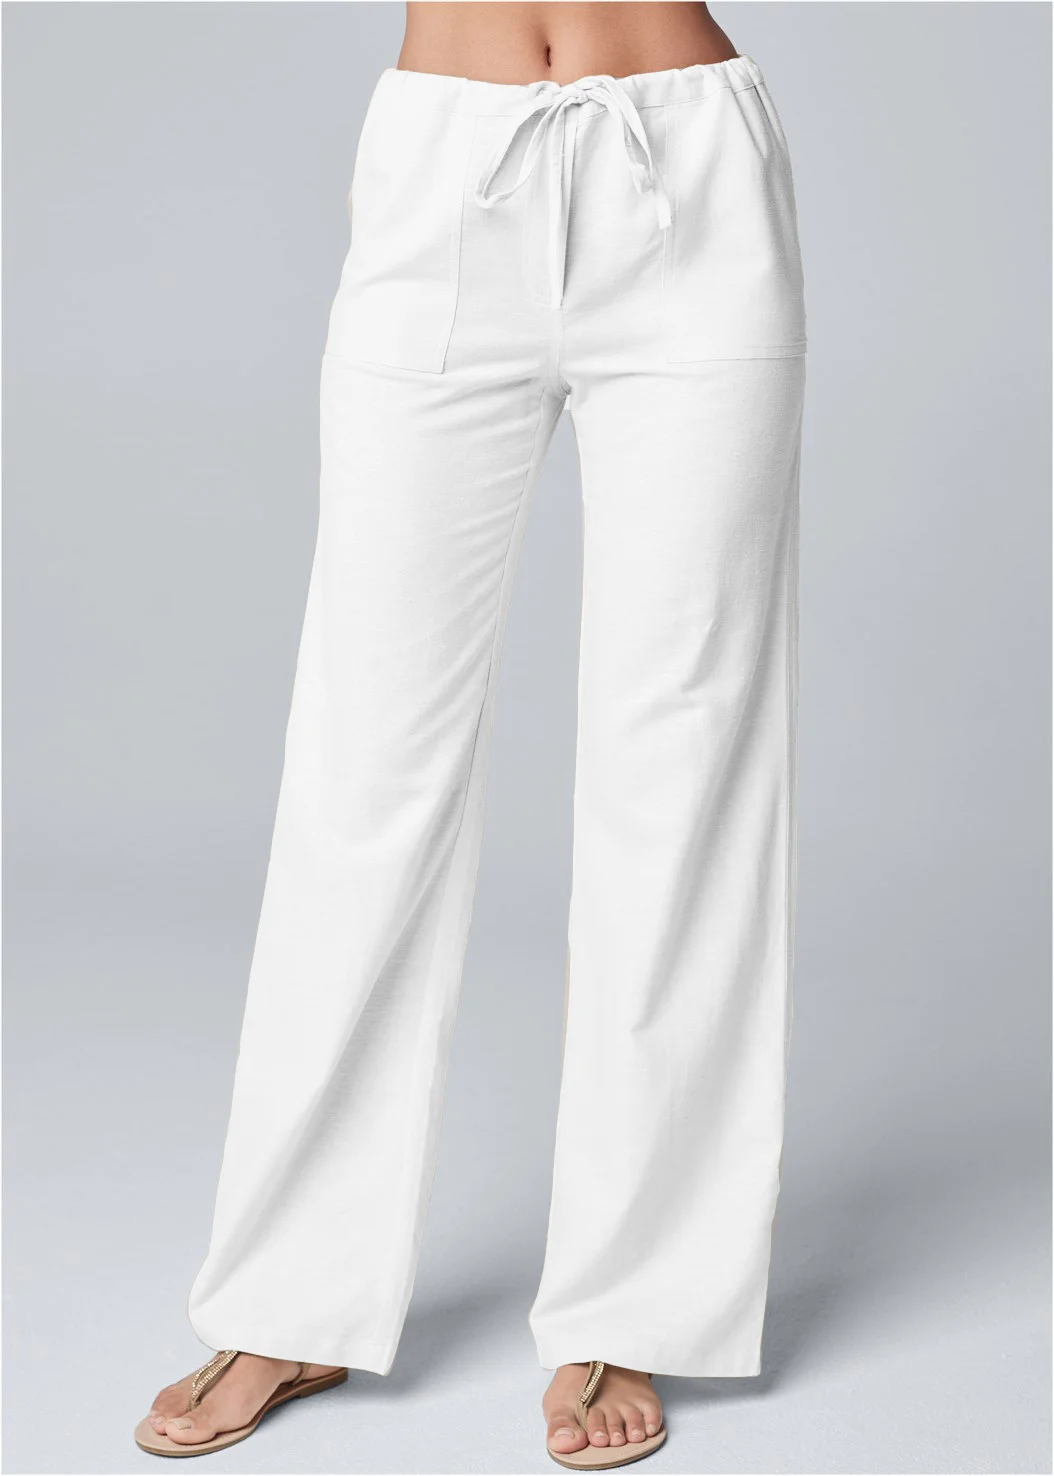 Fashionable & Comfortable Linen Pants for Women Loose Fit Cotton Linen Pants with Belt 